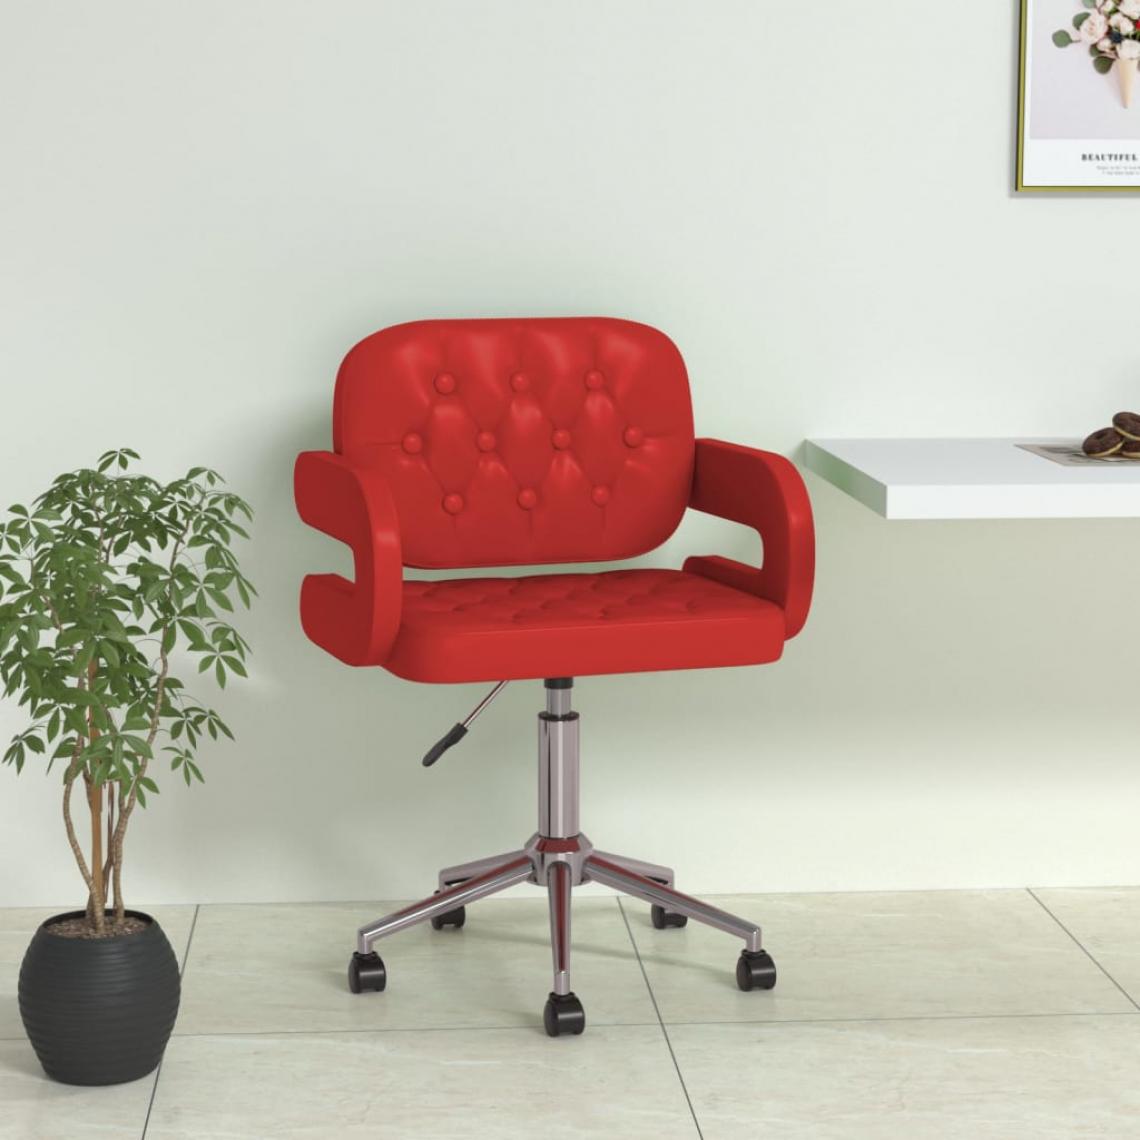 Vidaxl - vidaXL Chaise pivotante de salle à manger Rouge bordeaux Similicuir - Chaises